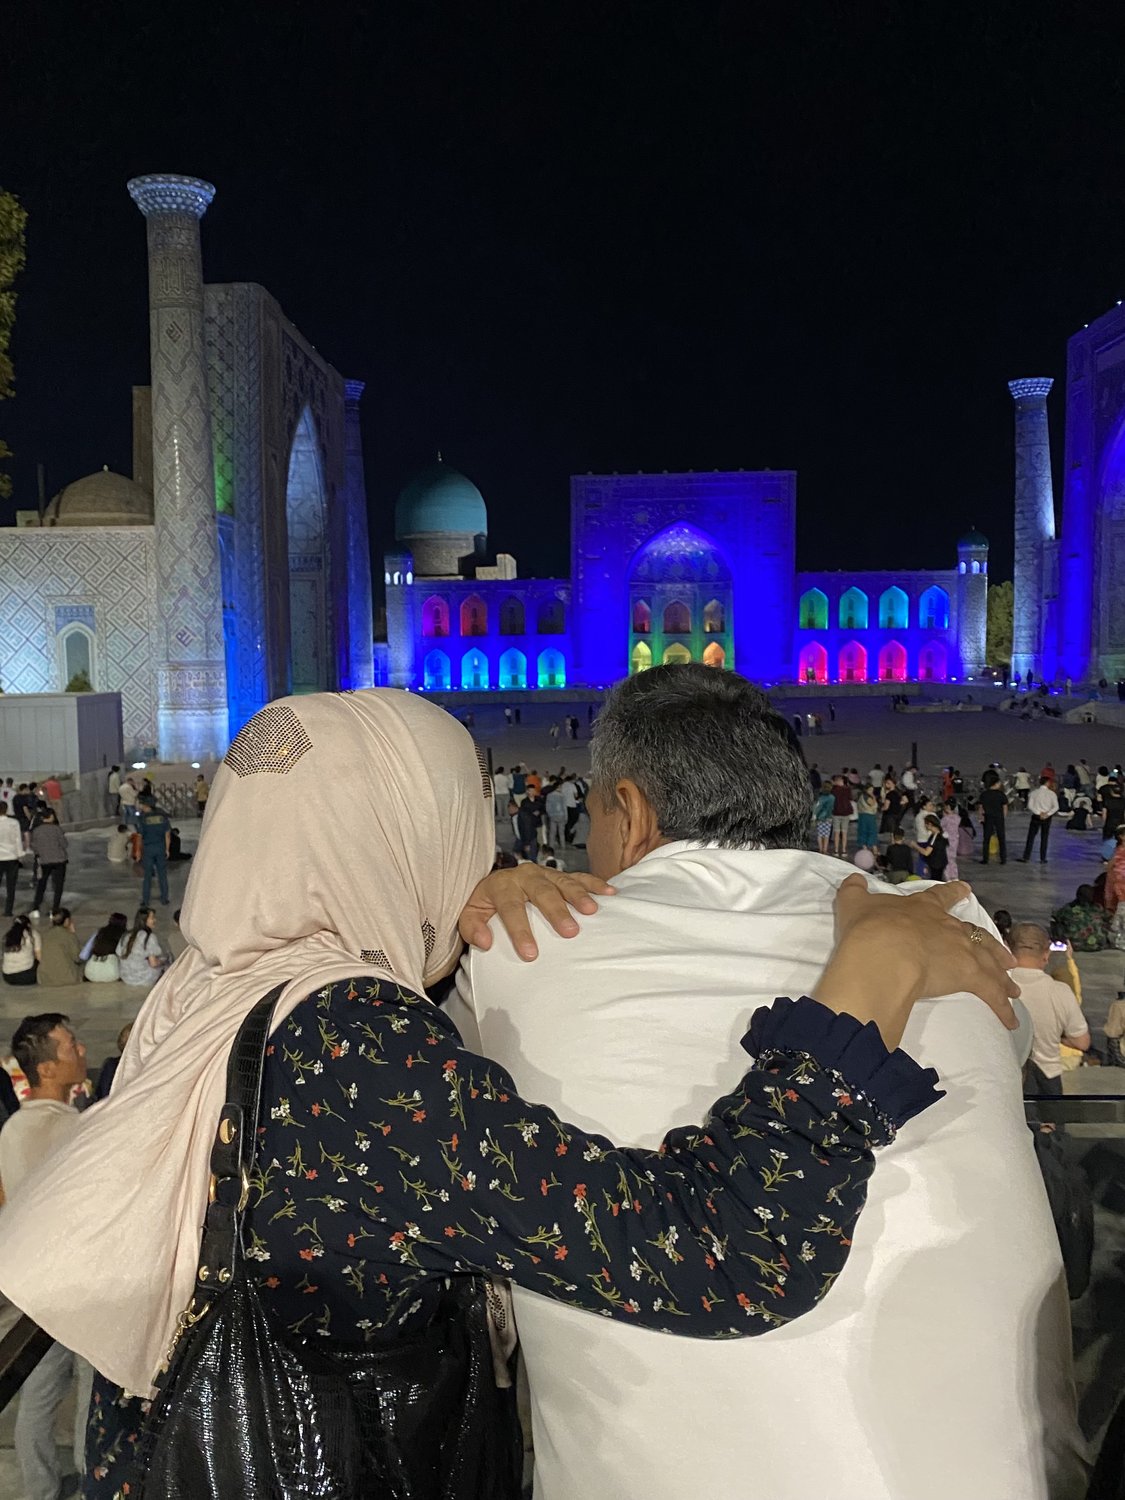 Он и она пришли любоваться вечерней подсветкой прекрасной площади Регистан